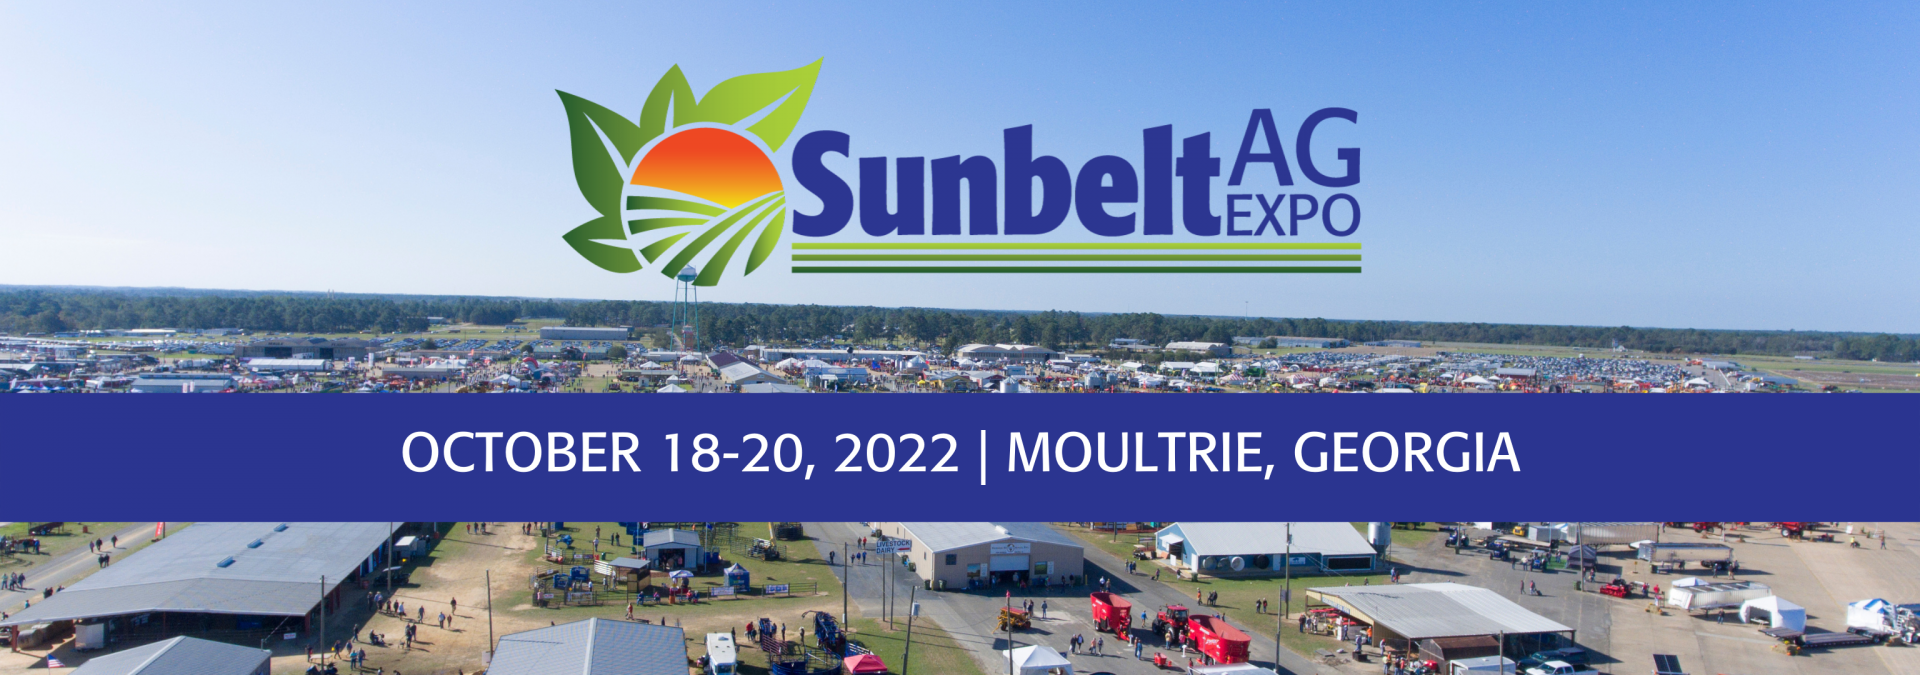 Sunbelt Ag Expo October 18-20, 2022